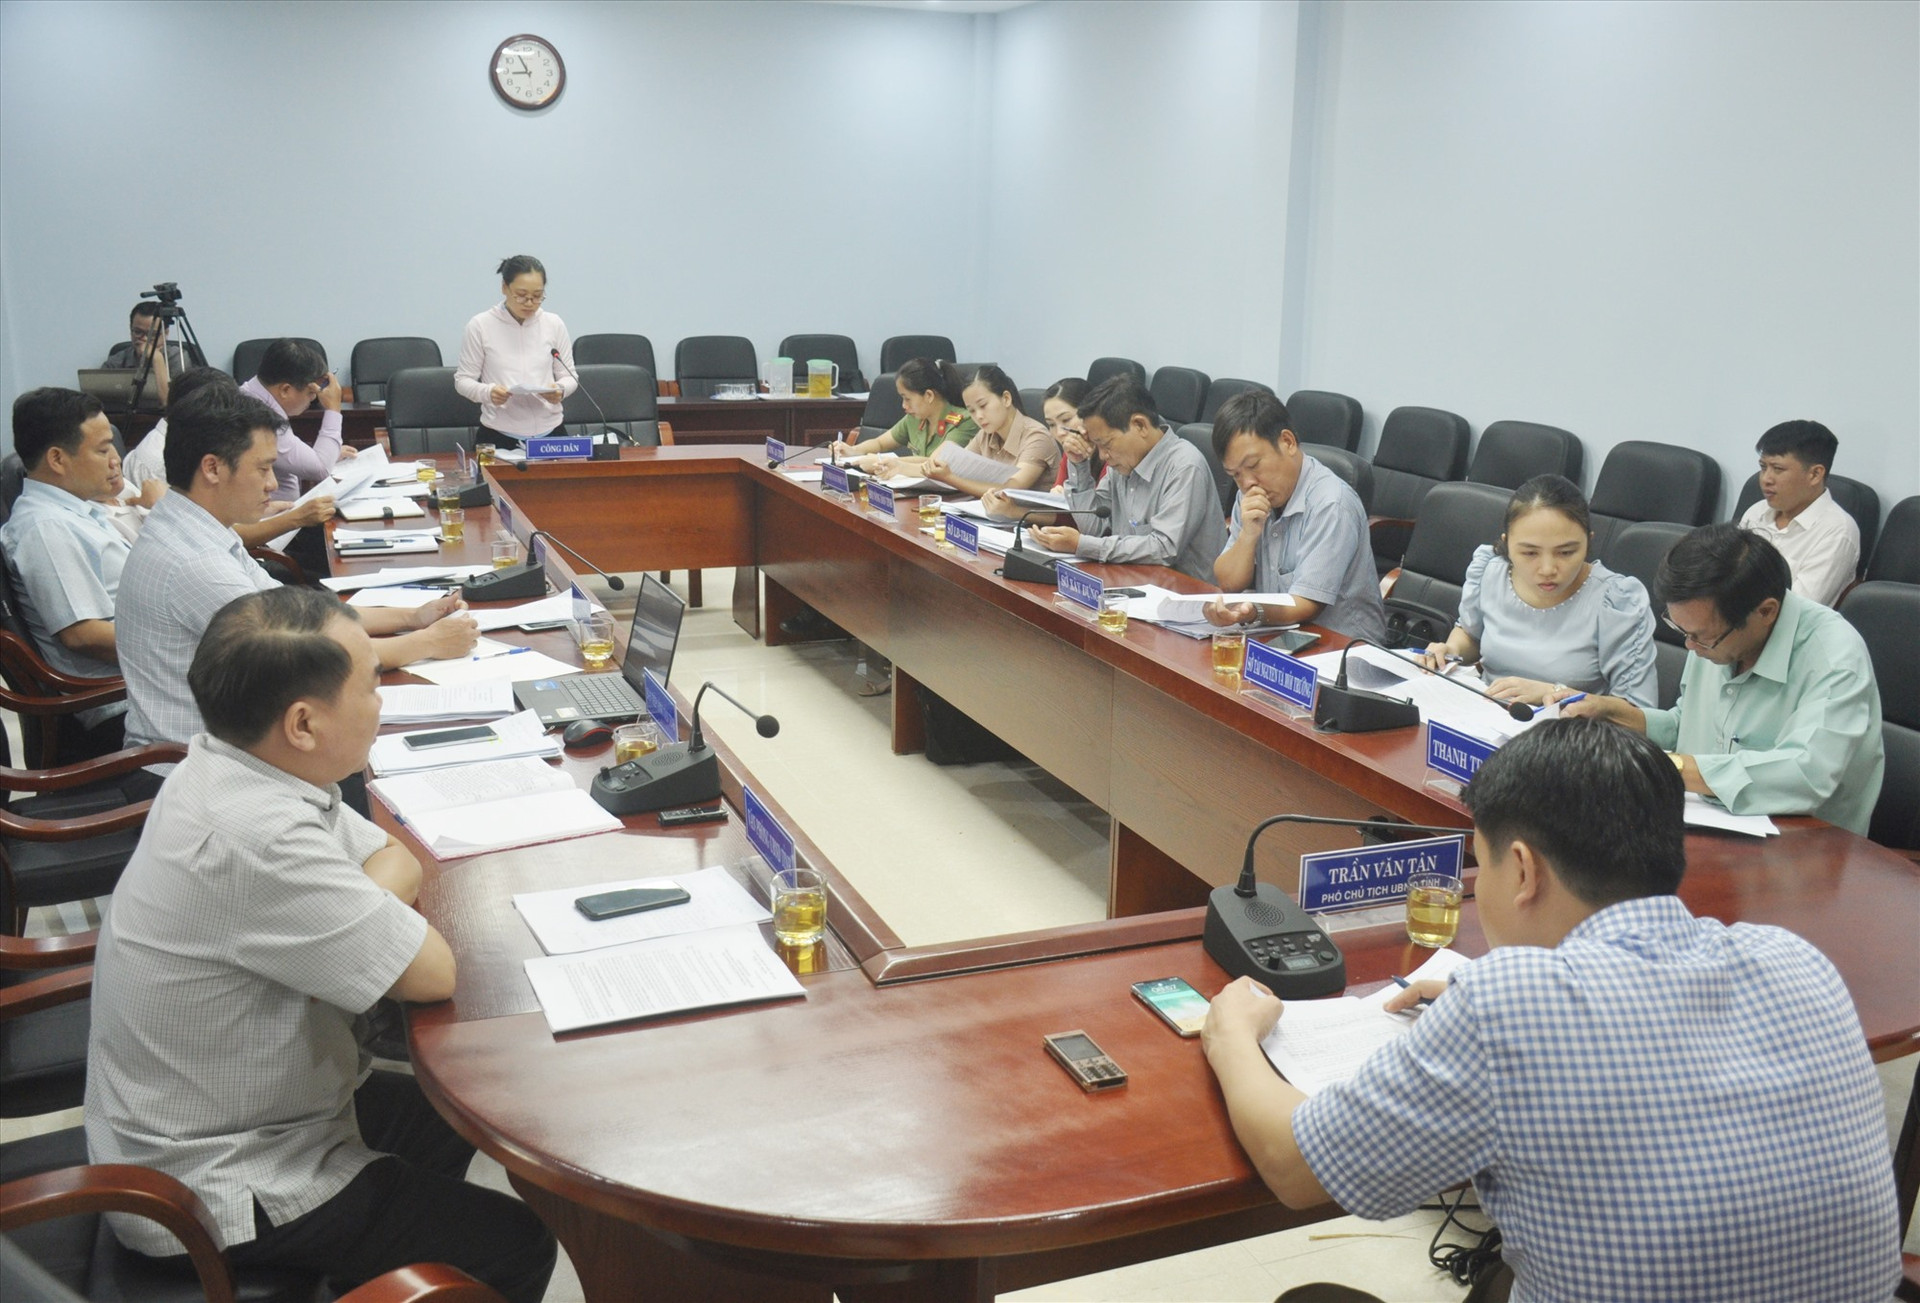 Phó Chủ tịch UBND tỉnh Trần Văn Tân chủ trì buổi tiếp, nghe bà Nguyễn Thị Mỹ Lệ trình bày